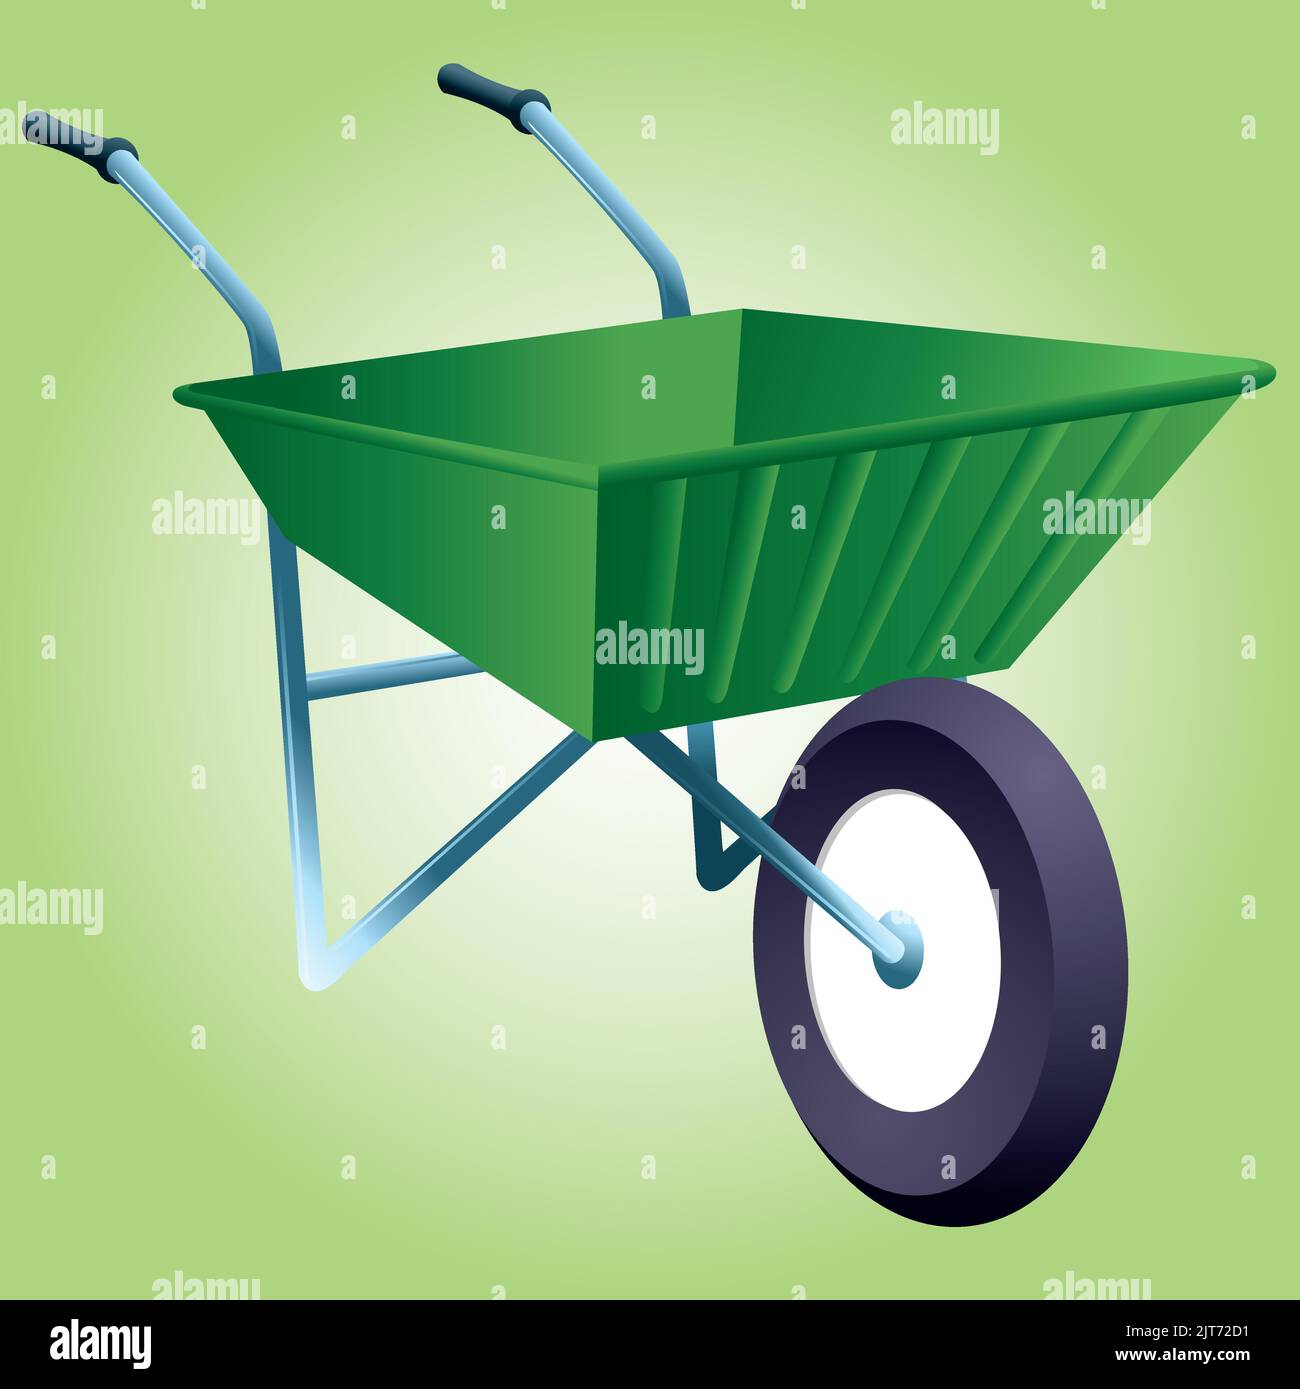 A vector illustration of a wheelbarrow garden tool. Stock Vector